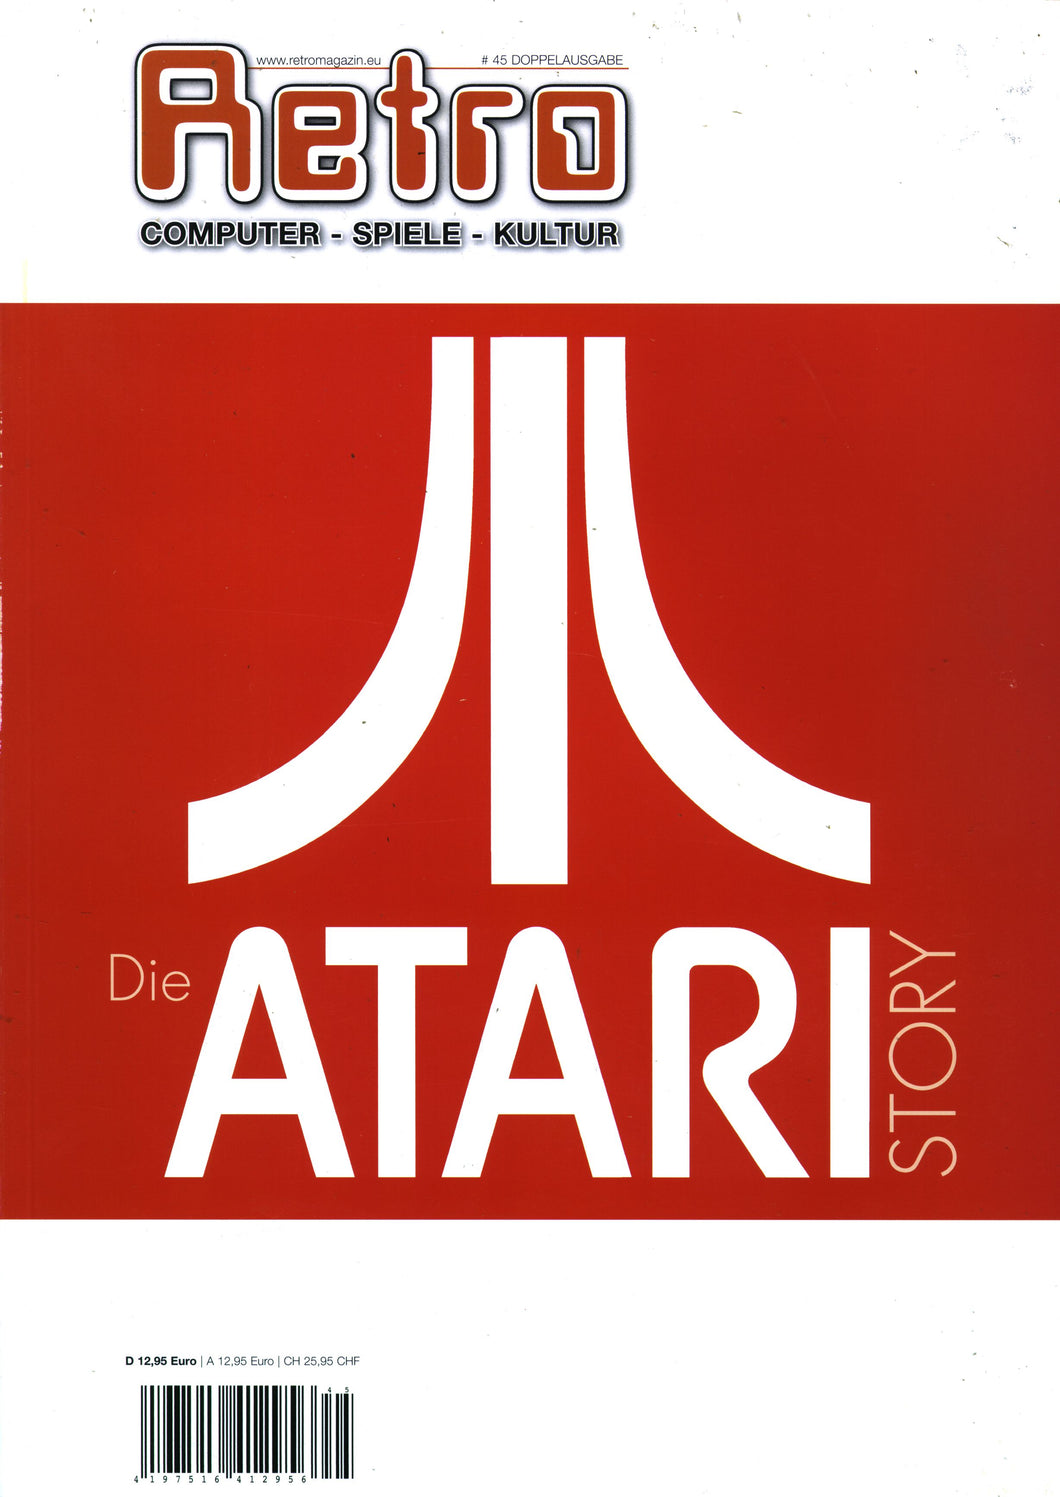 Die Atari Story